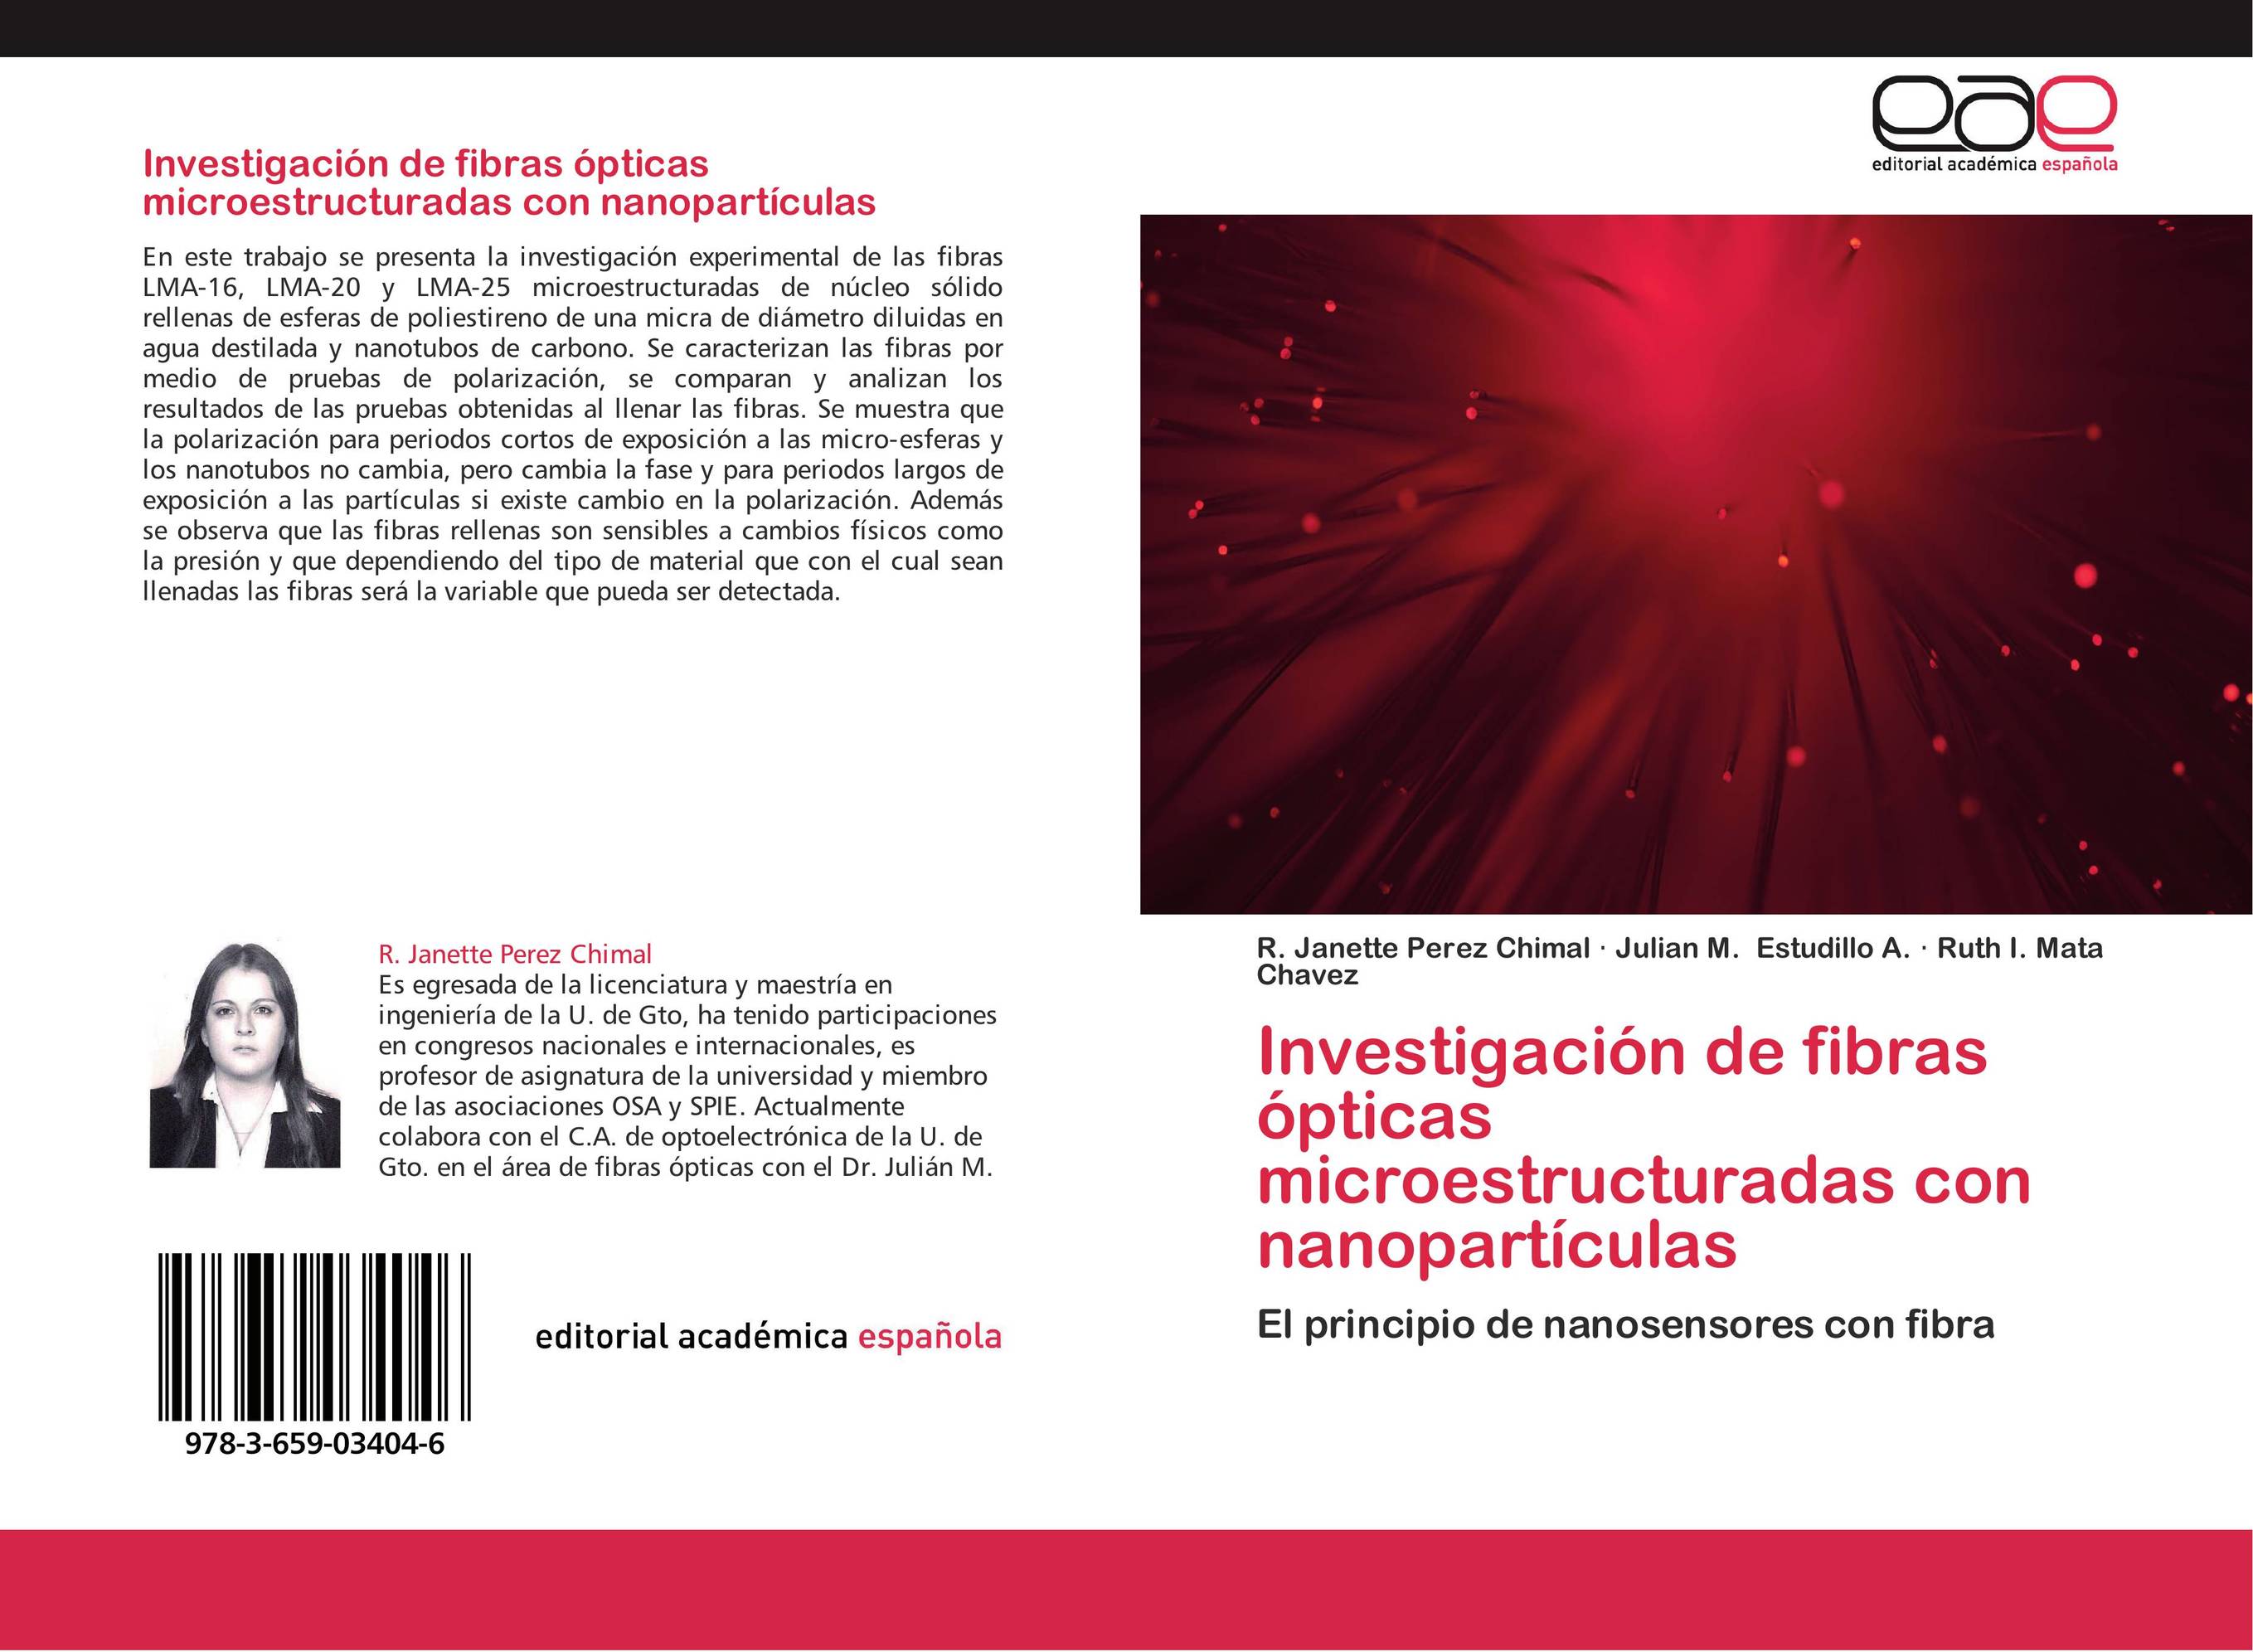 Investigación de fibras ópticas microestructuradas con nanopartículas